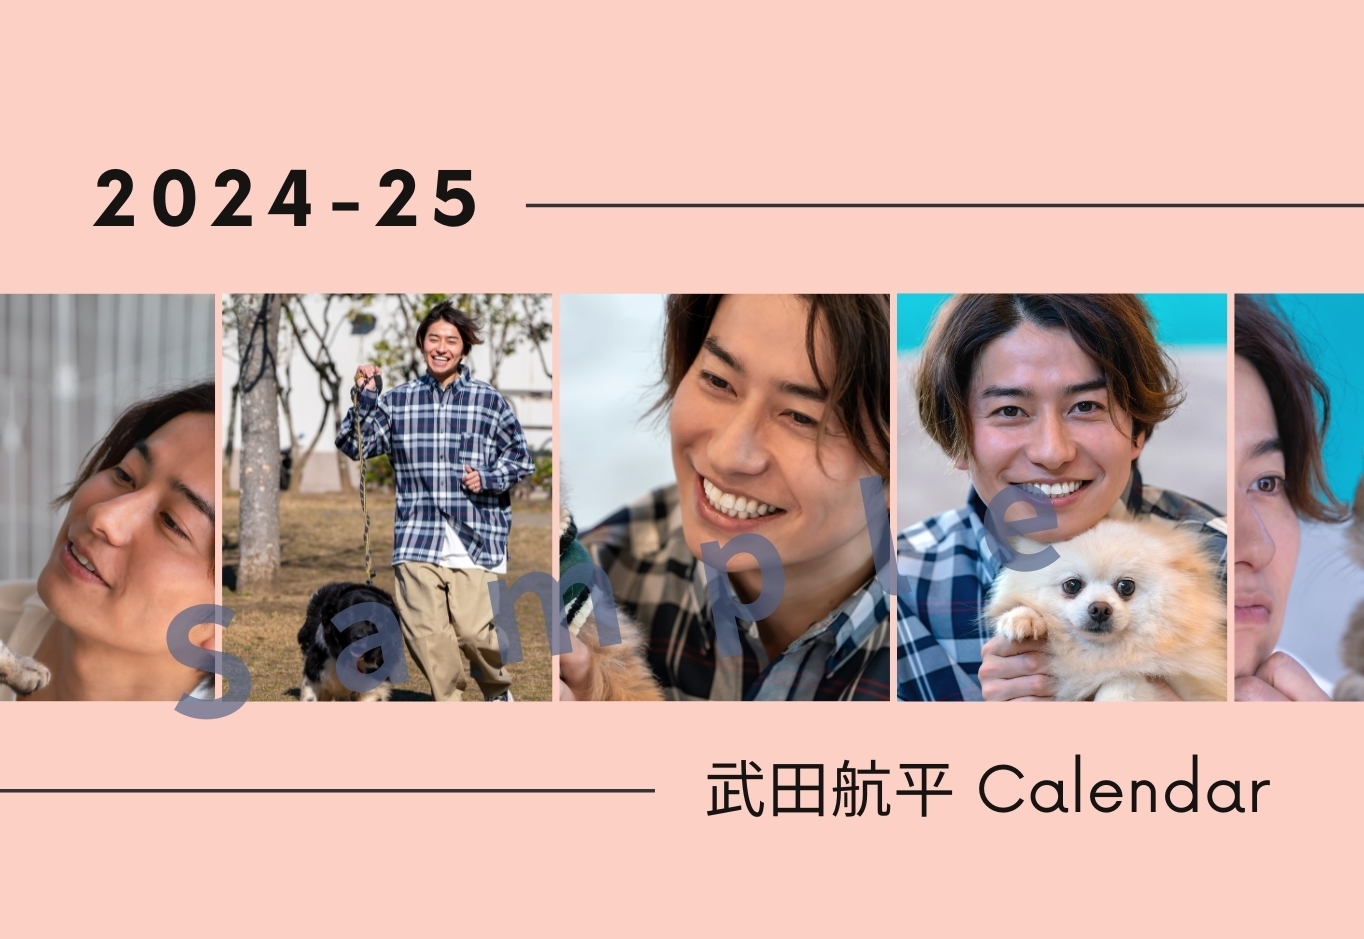 【一般販売】武田航平  2024-25 卓上カレンダー 【3/7まで期間限定受付】